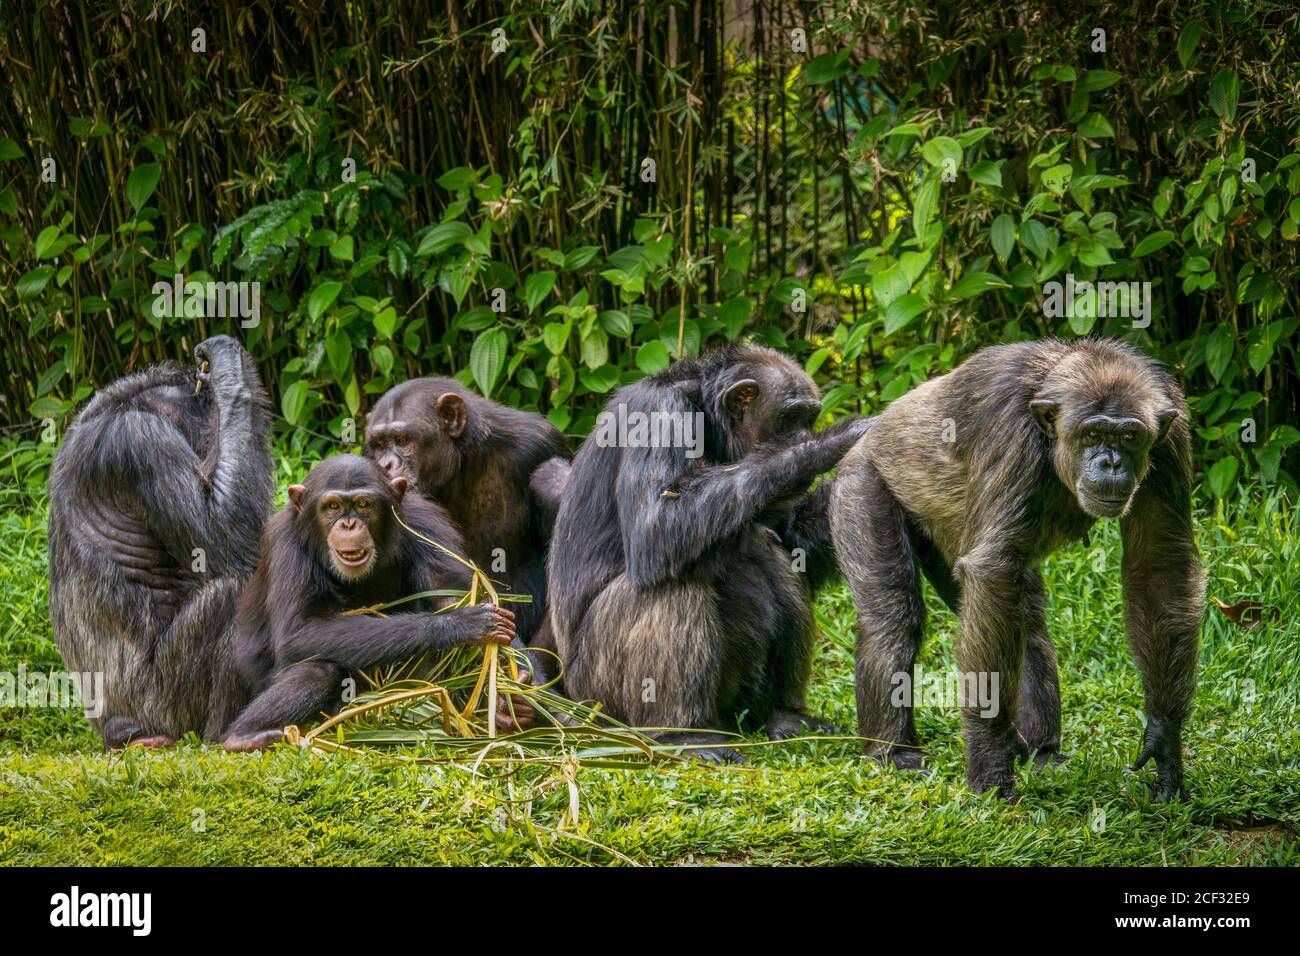 Interessante Tierverhalten, mit Fokus auf den erwachsenen männlichen Schimpansen auf rechts mit seinem Gesäß gepflegt. Stockfoto